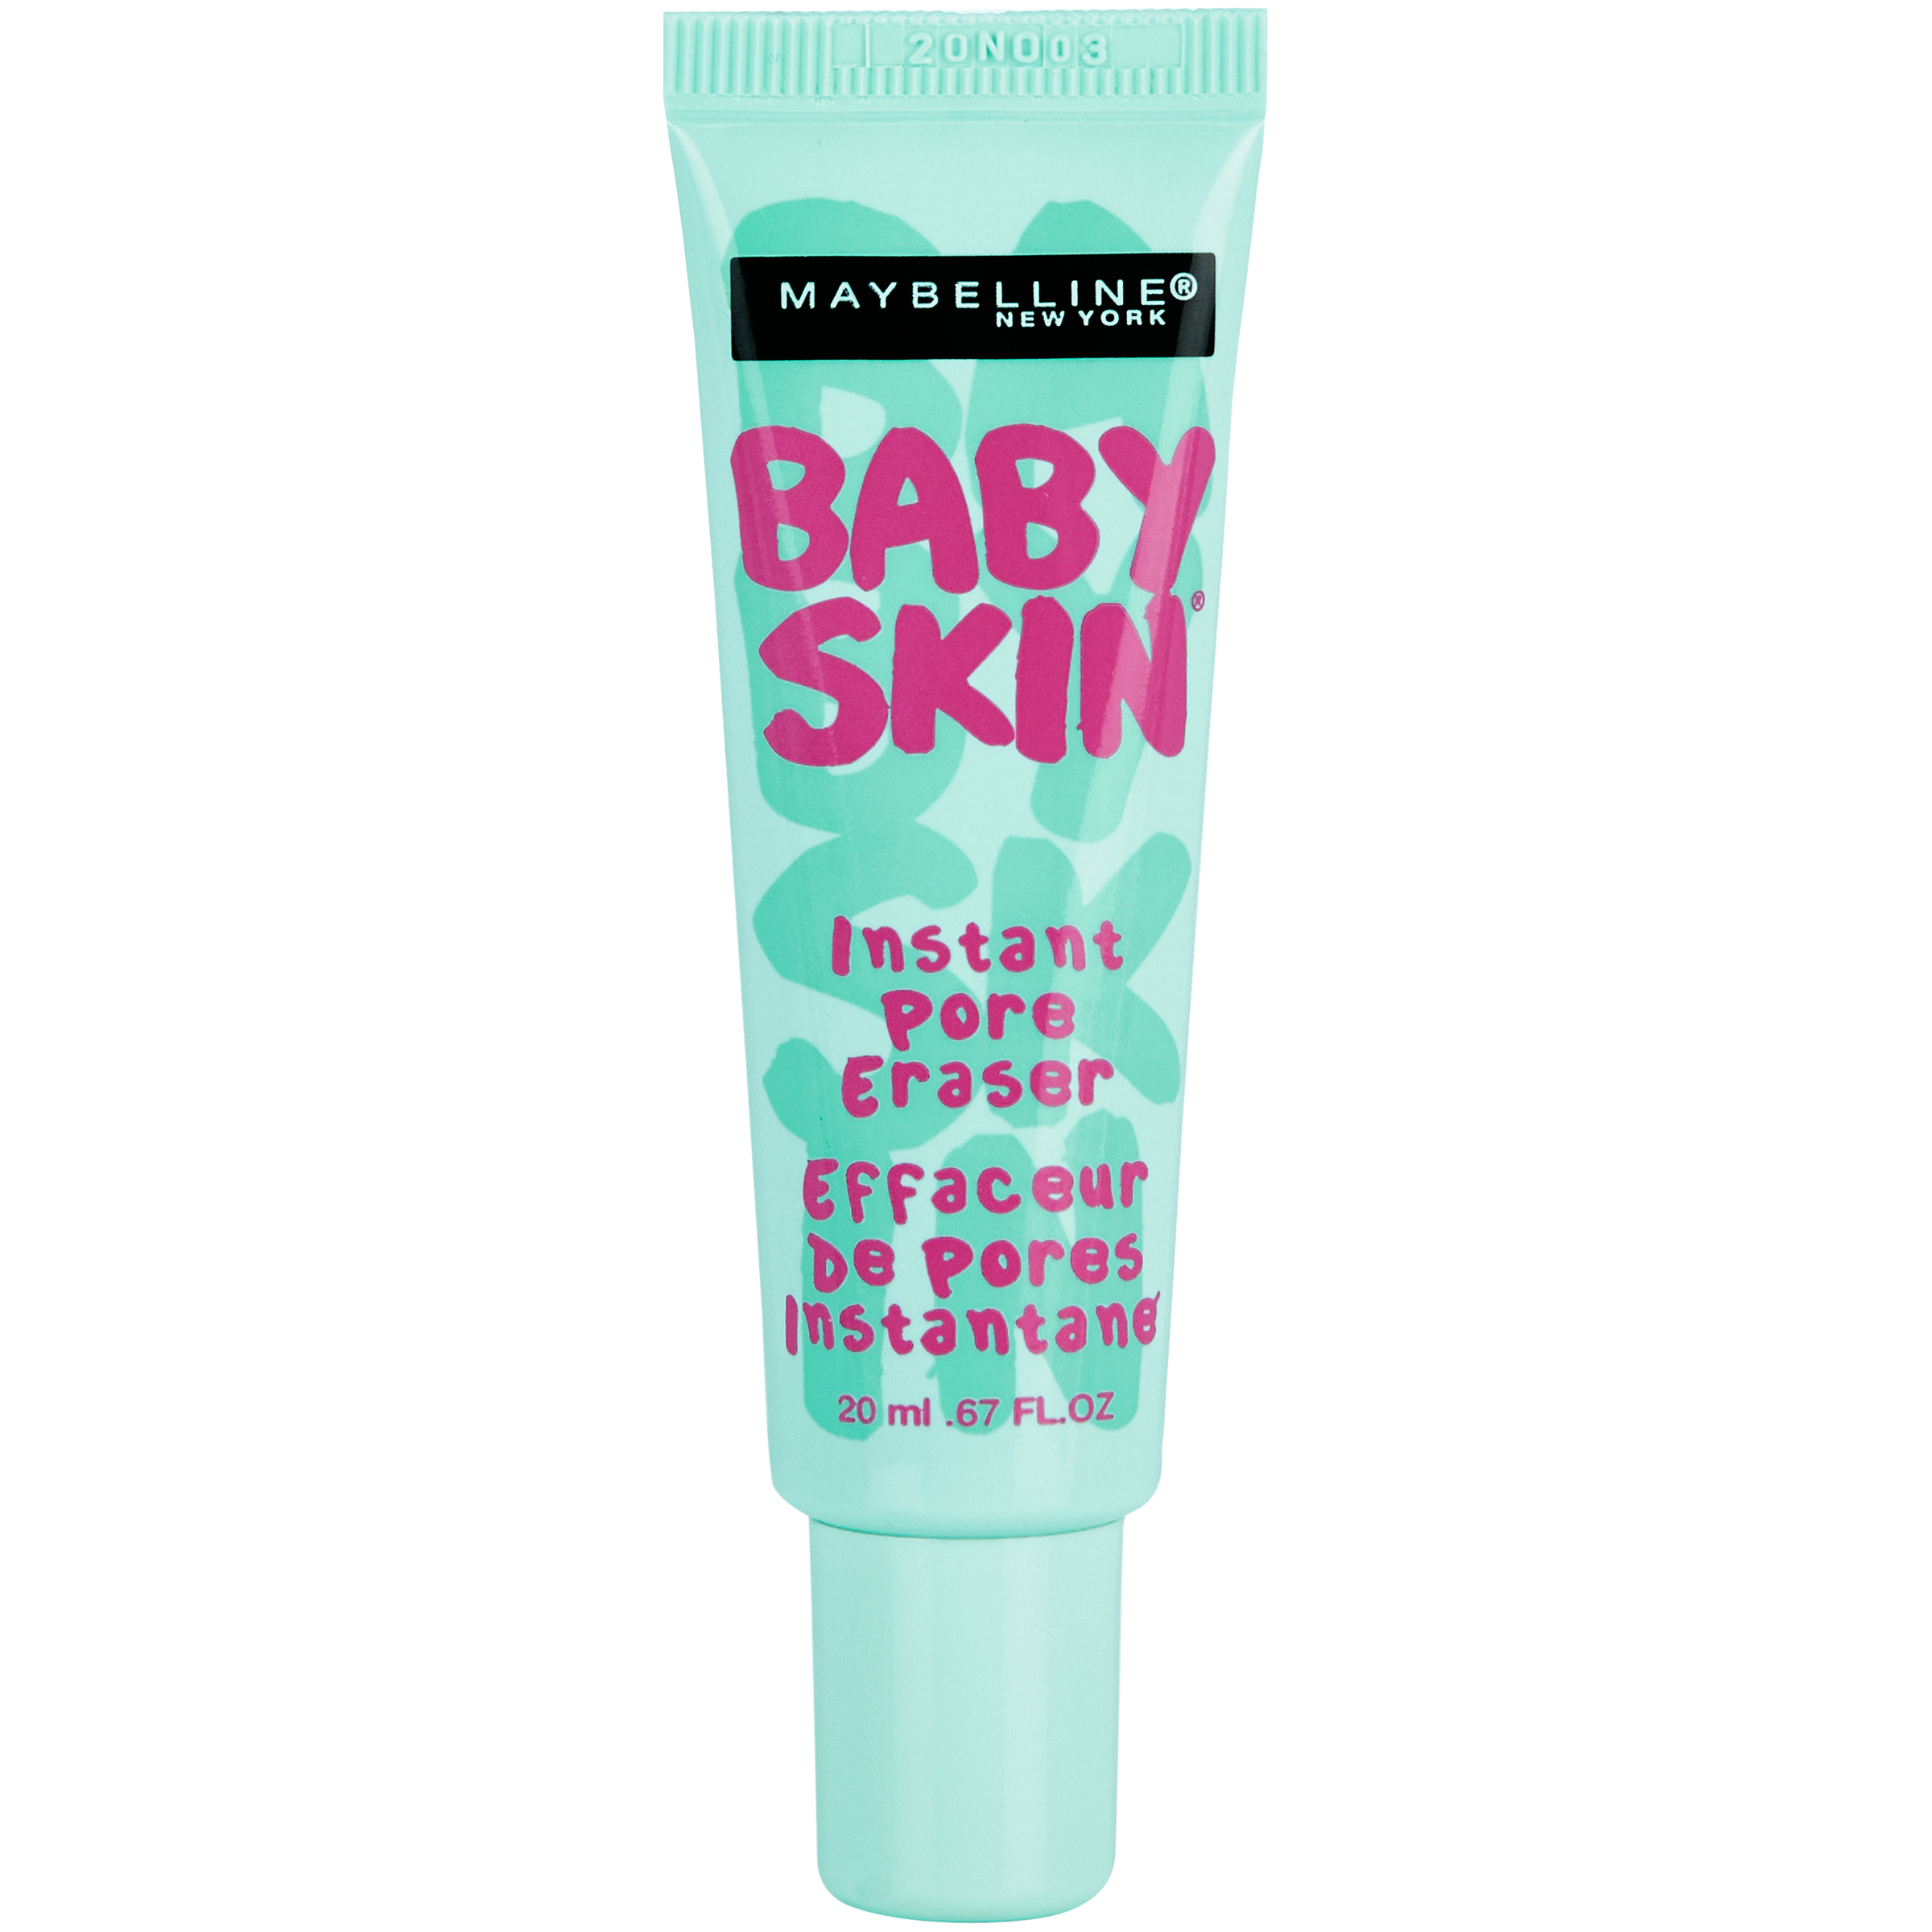 Maybelline Baby Skin Instant Pore Eraser Primer, Clear, 0.67 fl oz - image 1 of 12